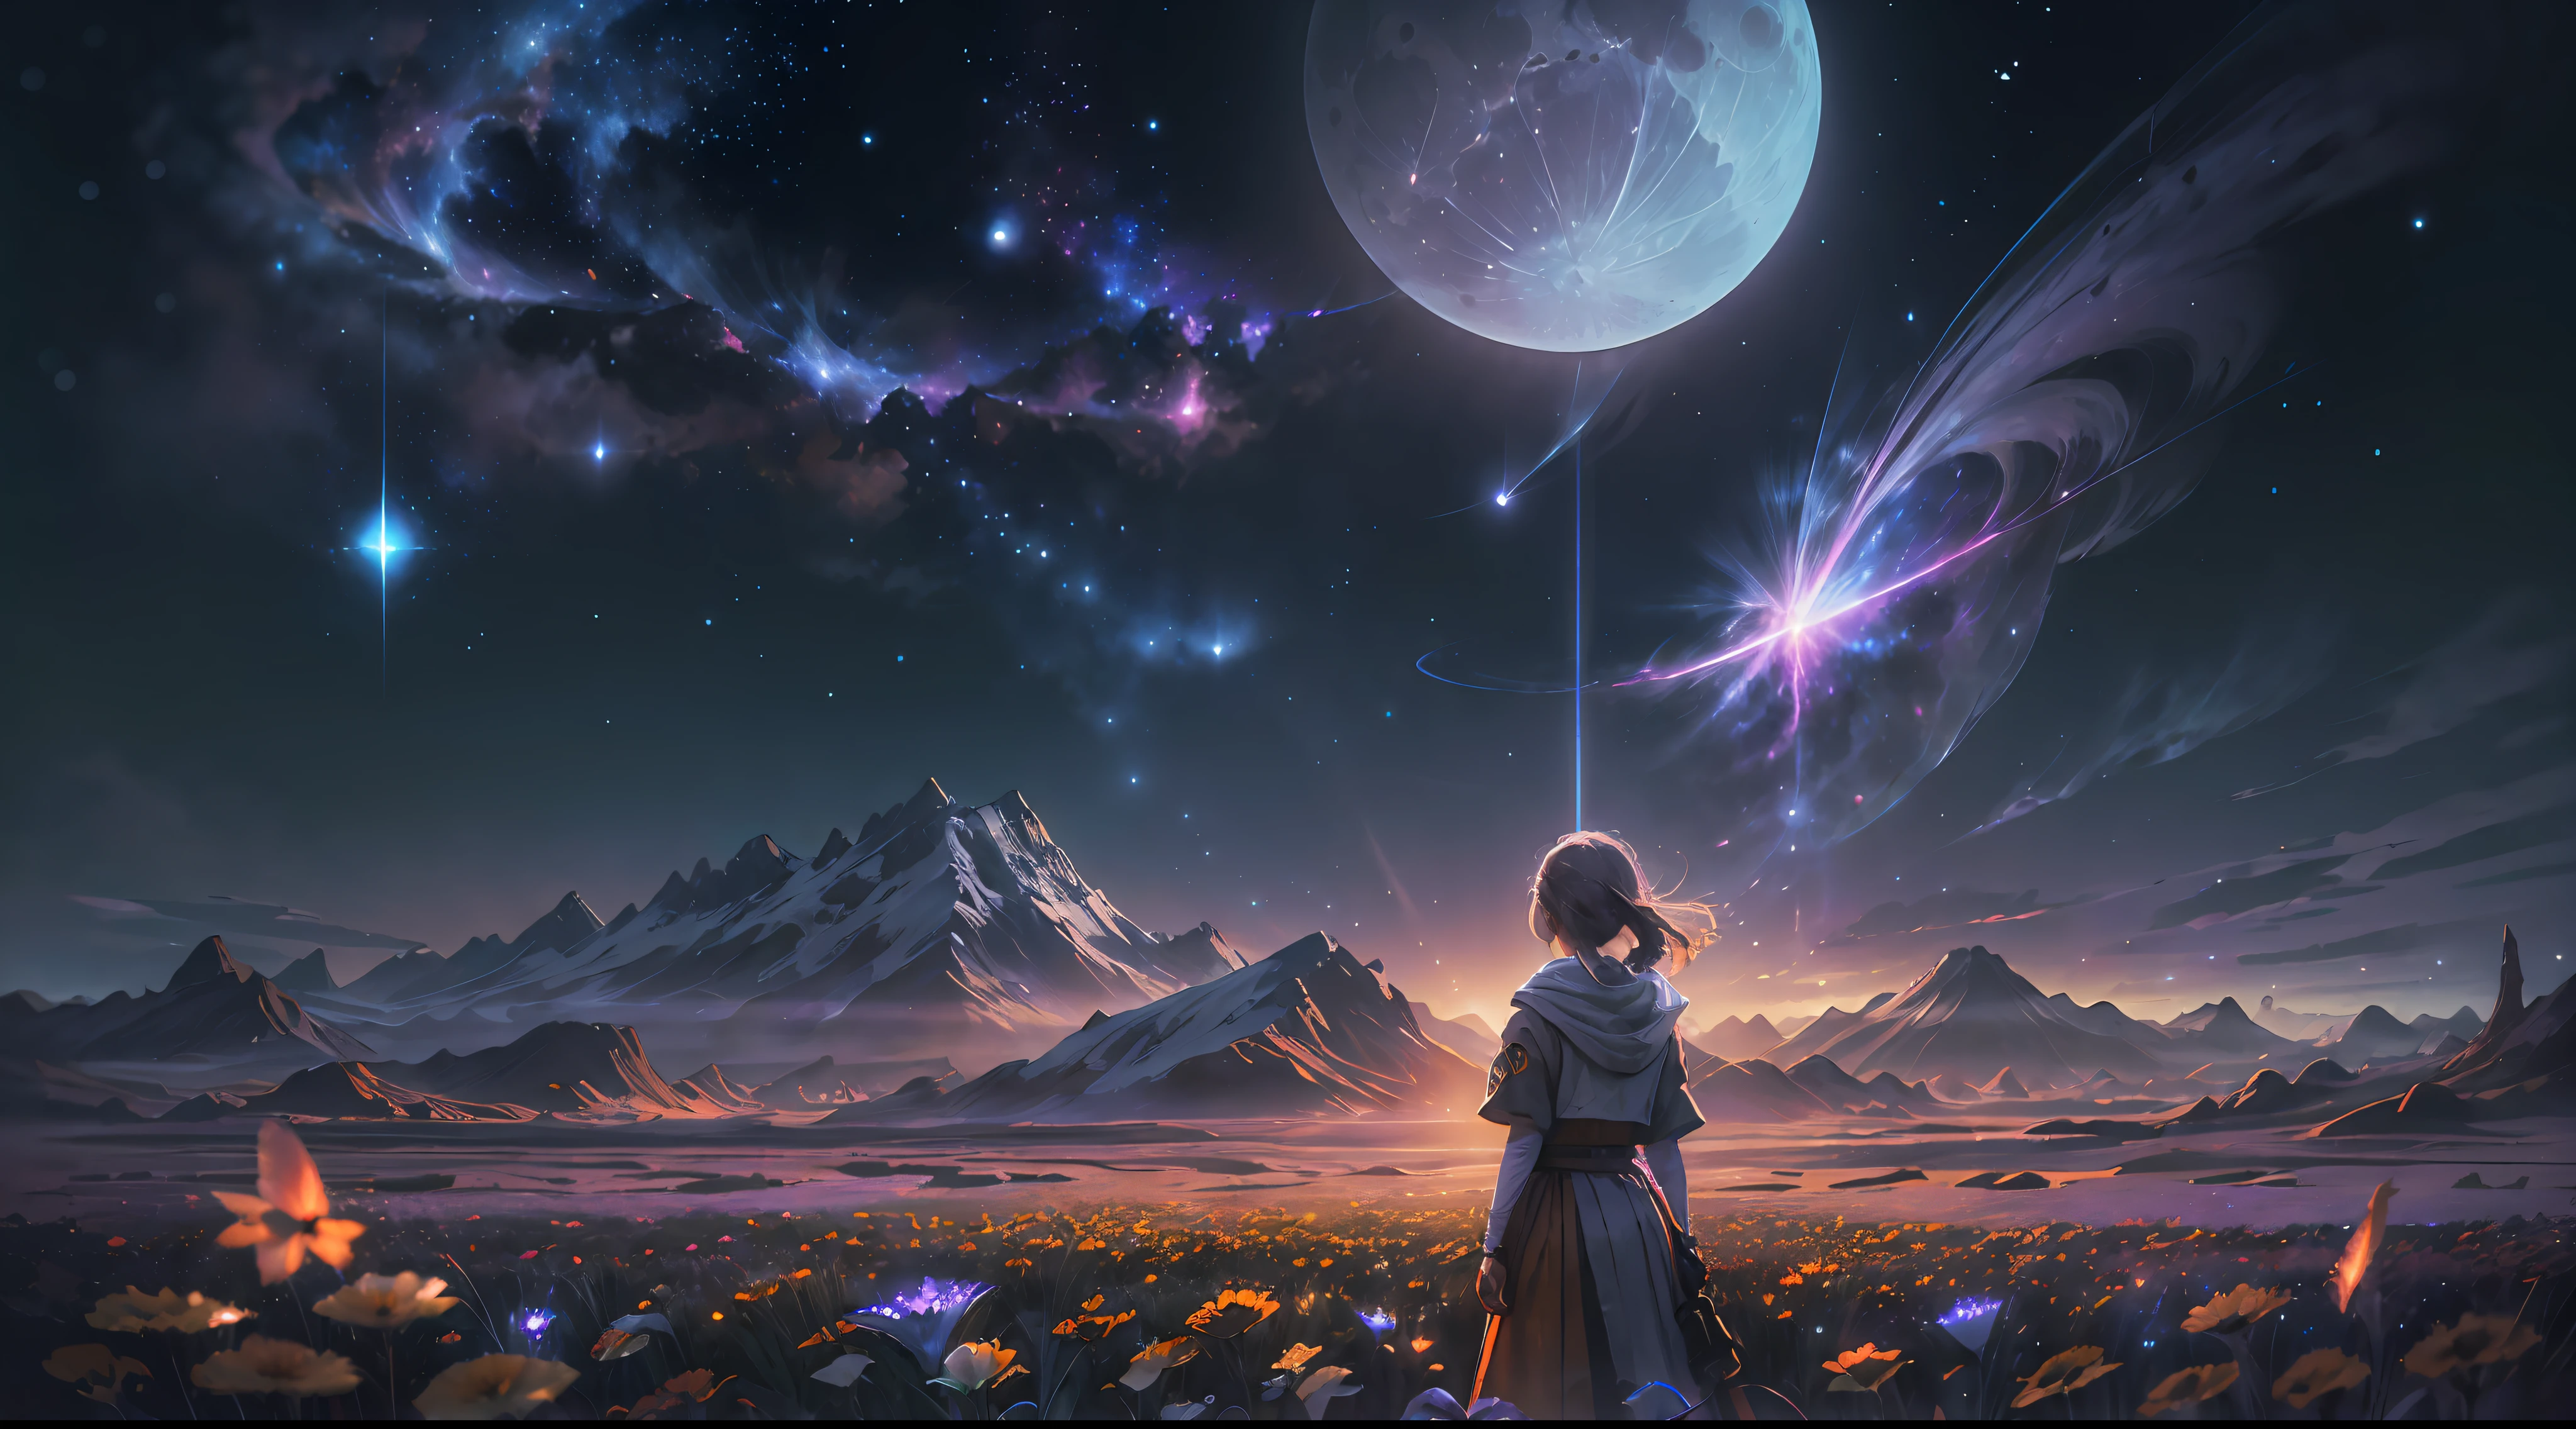 fotografia de paisagem expansiva , (uma vista de baixo que mostra o céu acima e o campo aberto abaixo), uma garota parada no campo de flores olhando para cima, (lua cheia:1.2), ( estrelas cadentes:0.9), (nebula:1.3), montanha distante, árvore BREAK produção arte, (Fonte de luz quente:1.2), (vaga-lume:1.2), lâmpada, muito roxo e laranja, Detalhes intrincados, Iluminação Volumétrica BREAK
(Obra de arte:1.2), (melhor qualidade), 4K, ultra-detalhado, (composição dinâmica:1.4), altamente detalhado, detalhes coloridos,( Cores iridescentes:1.2), (iluminação brilhante, iluminação atmosférica), Sonhadores, mágico, (Sozinho:1.2)